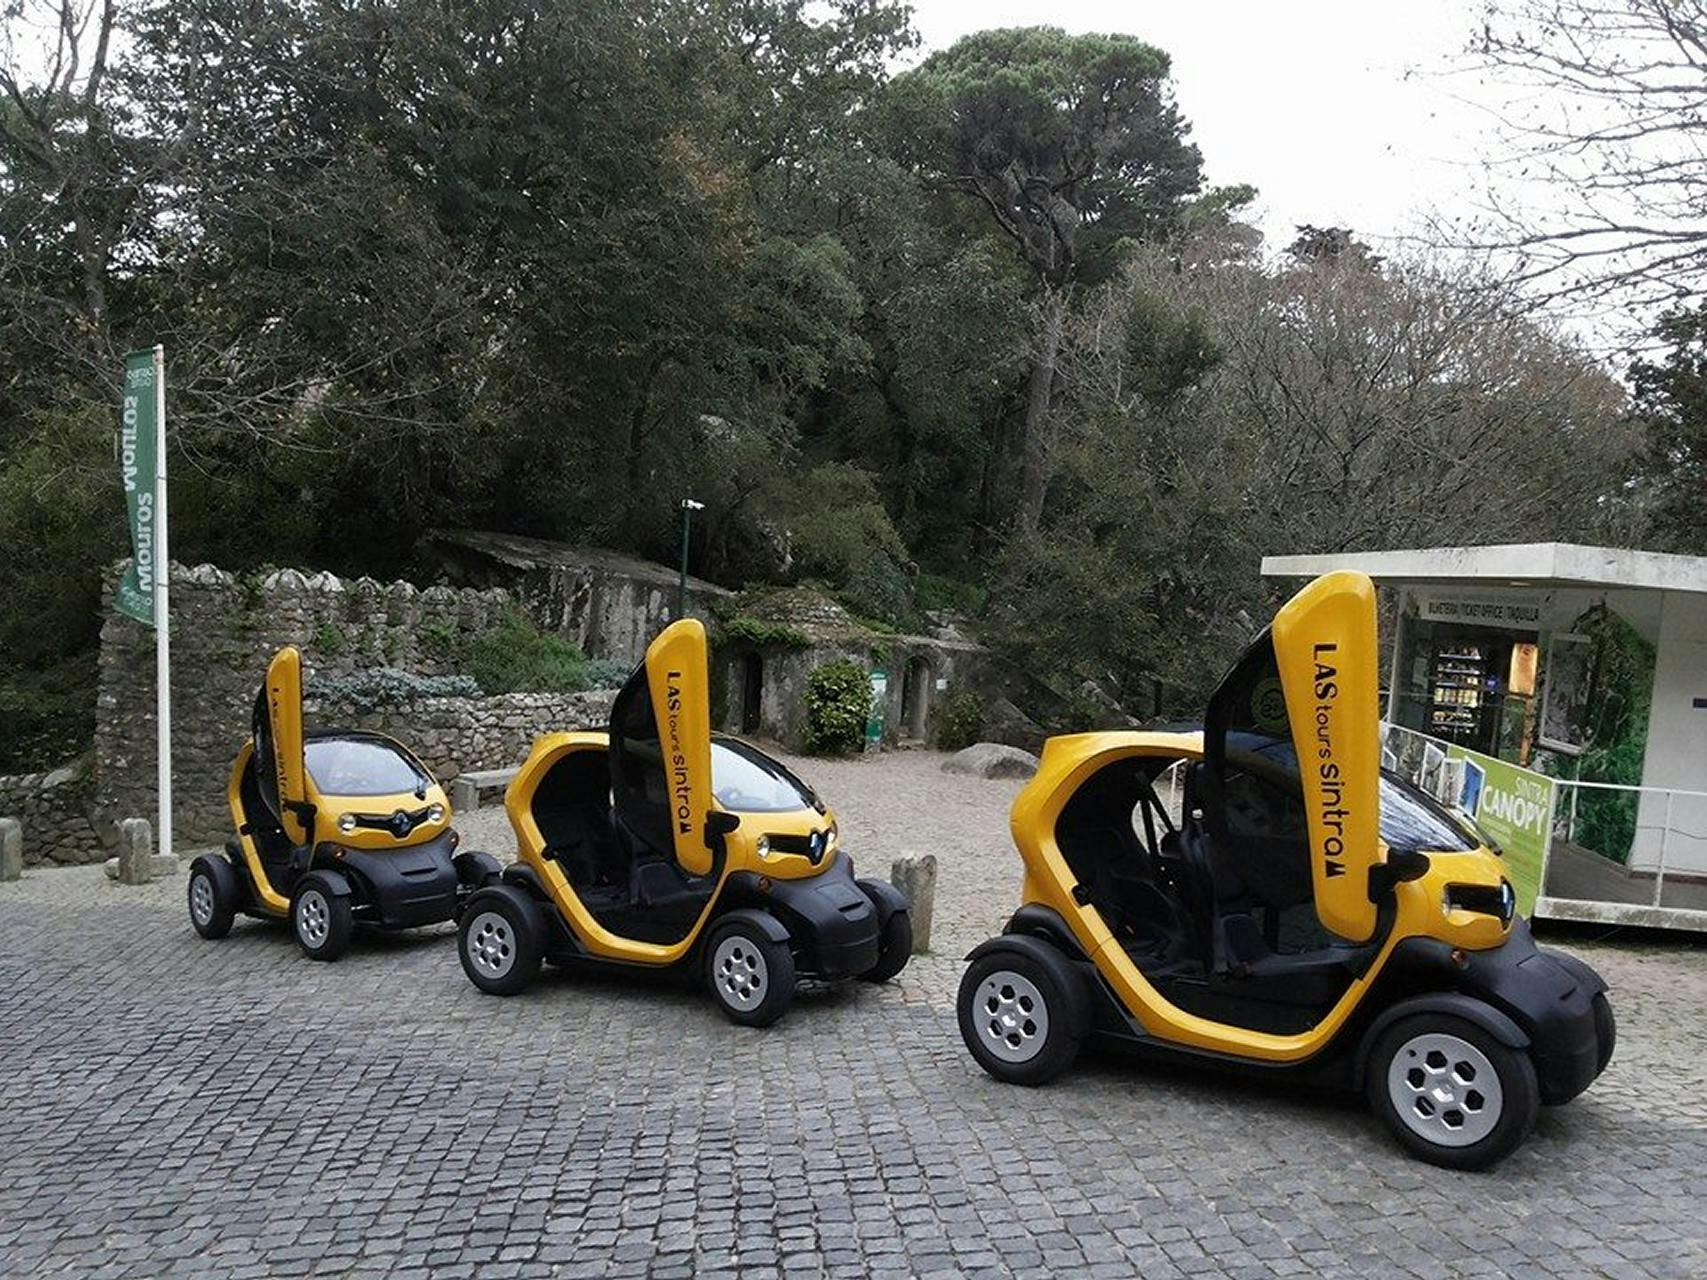 Inolvidable recorrido en coche eléctrico por la naturaleza y los jardines románticos del patrimonio de Sintra